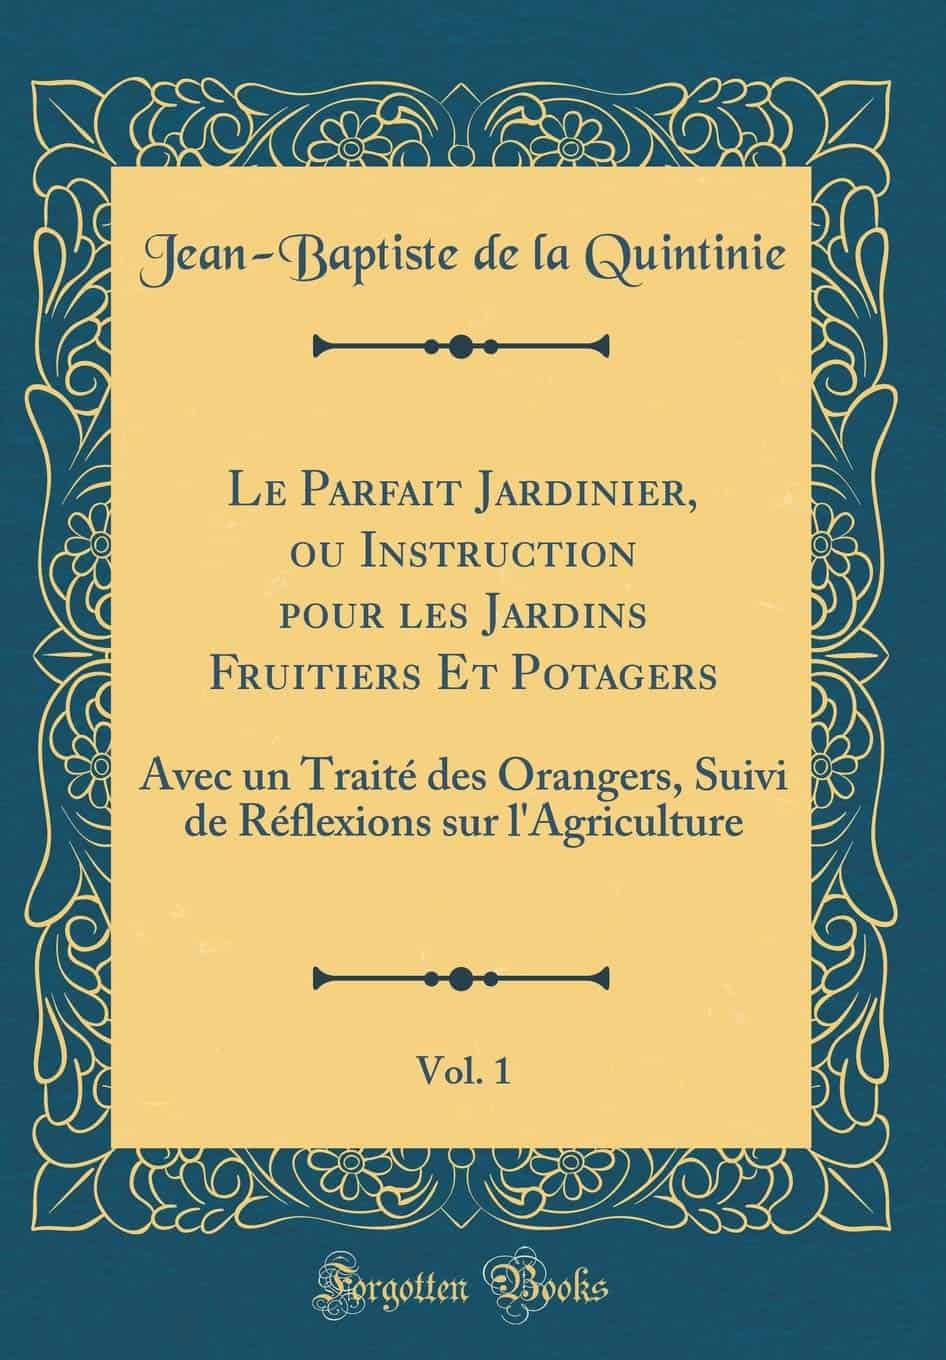 Le Parfait Jardinier, ou Instruction pour les Jardins Fruitiers Et Potagers, Vol. 1